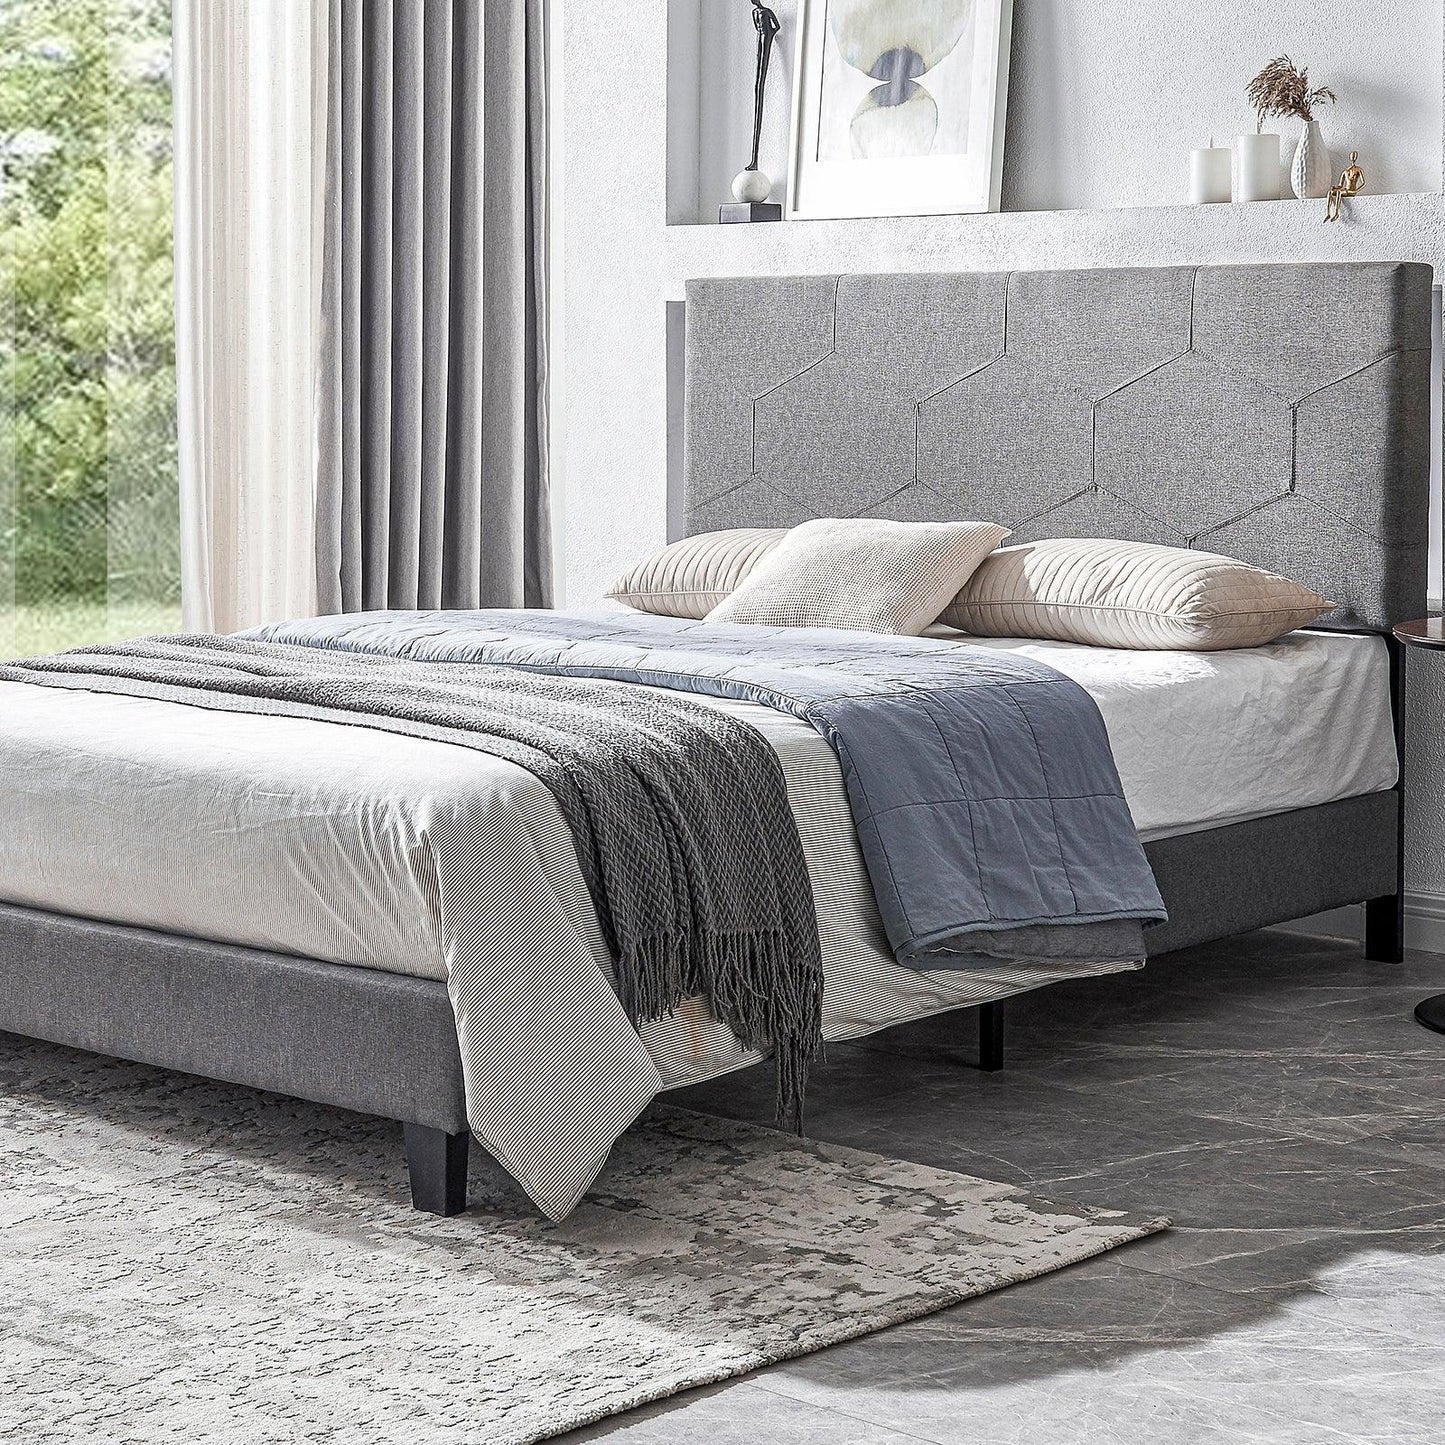 Queen Size Upholstered Platform Bed Frame Wood Slat Support Easy Assembly Grey - FurniFindUSA